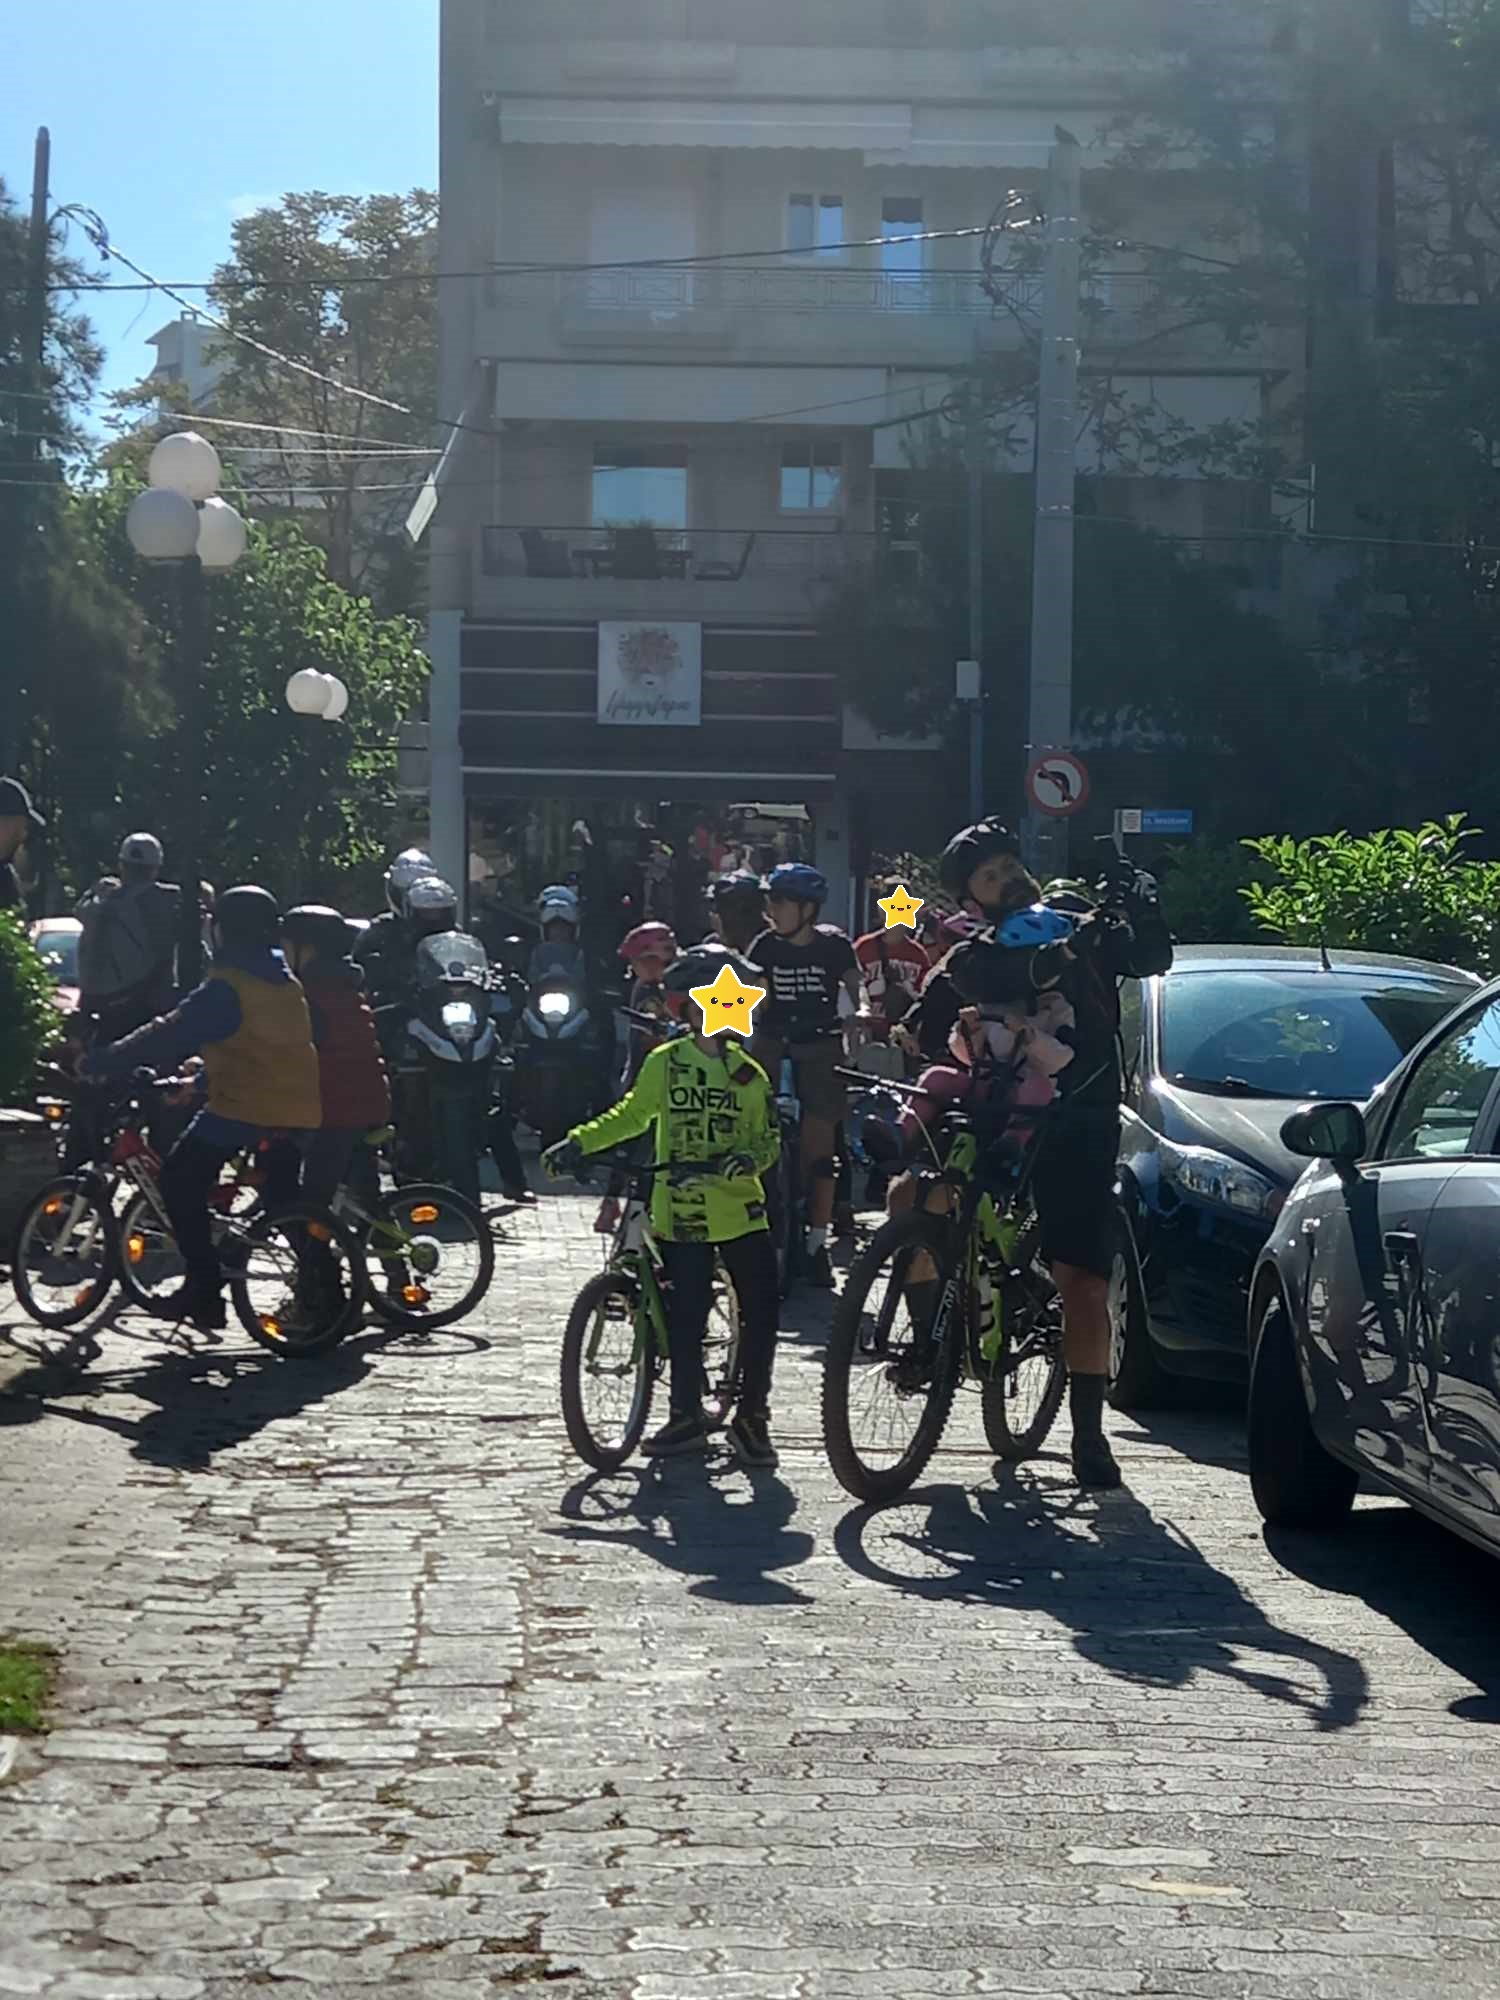 Χαμόγελα και σημαντική συμμετοχή στην πρώτη Ποδηλατάδα του Δήμου Λυκόβρυσης – Πεύκης!